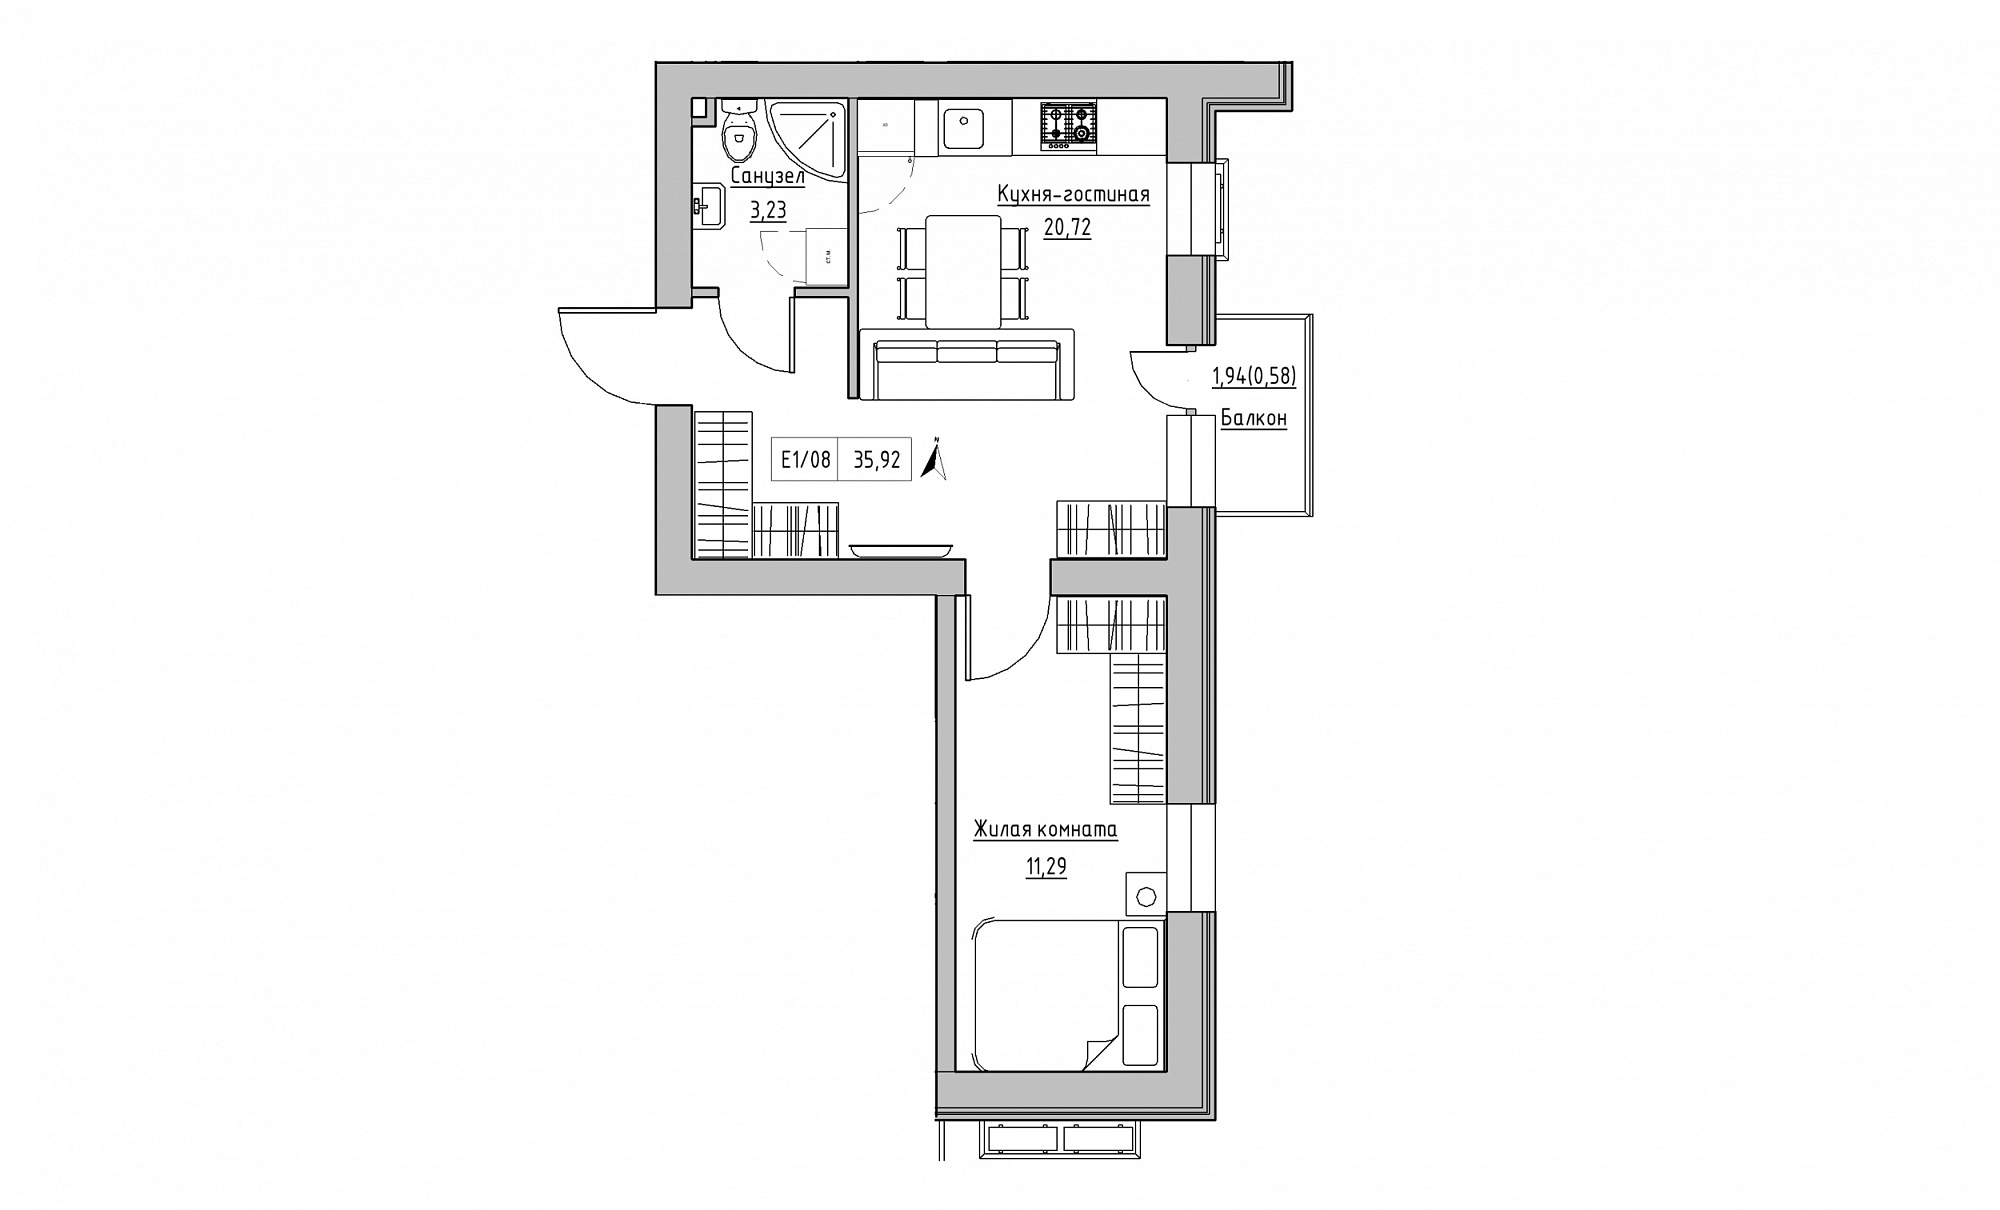 Планування 1-к квартира площею 35.92м2, KS-015-02/0007.